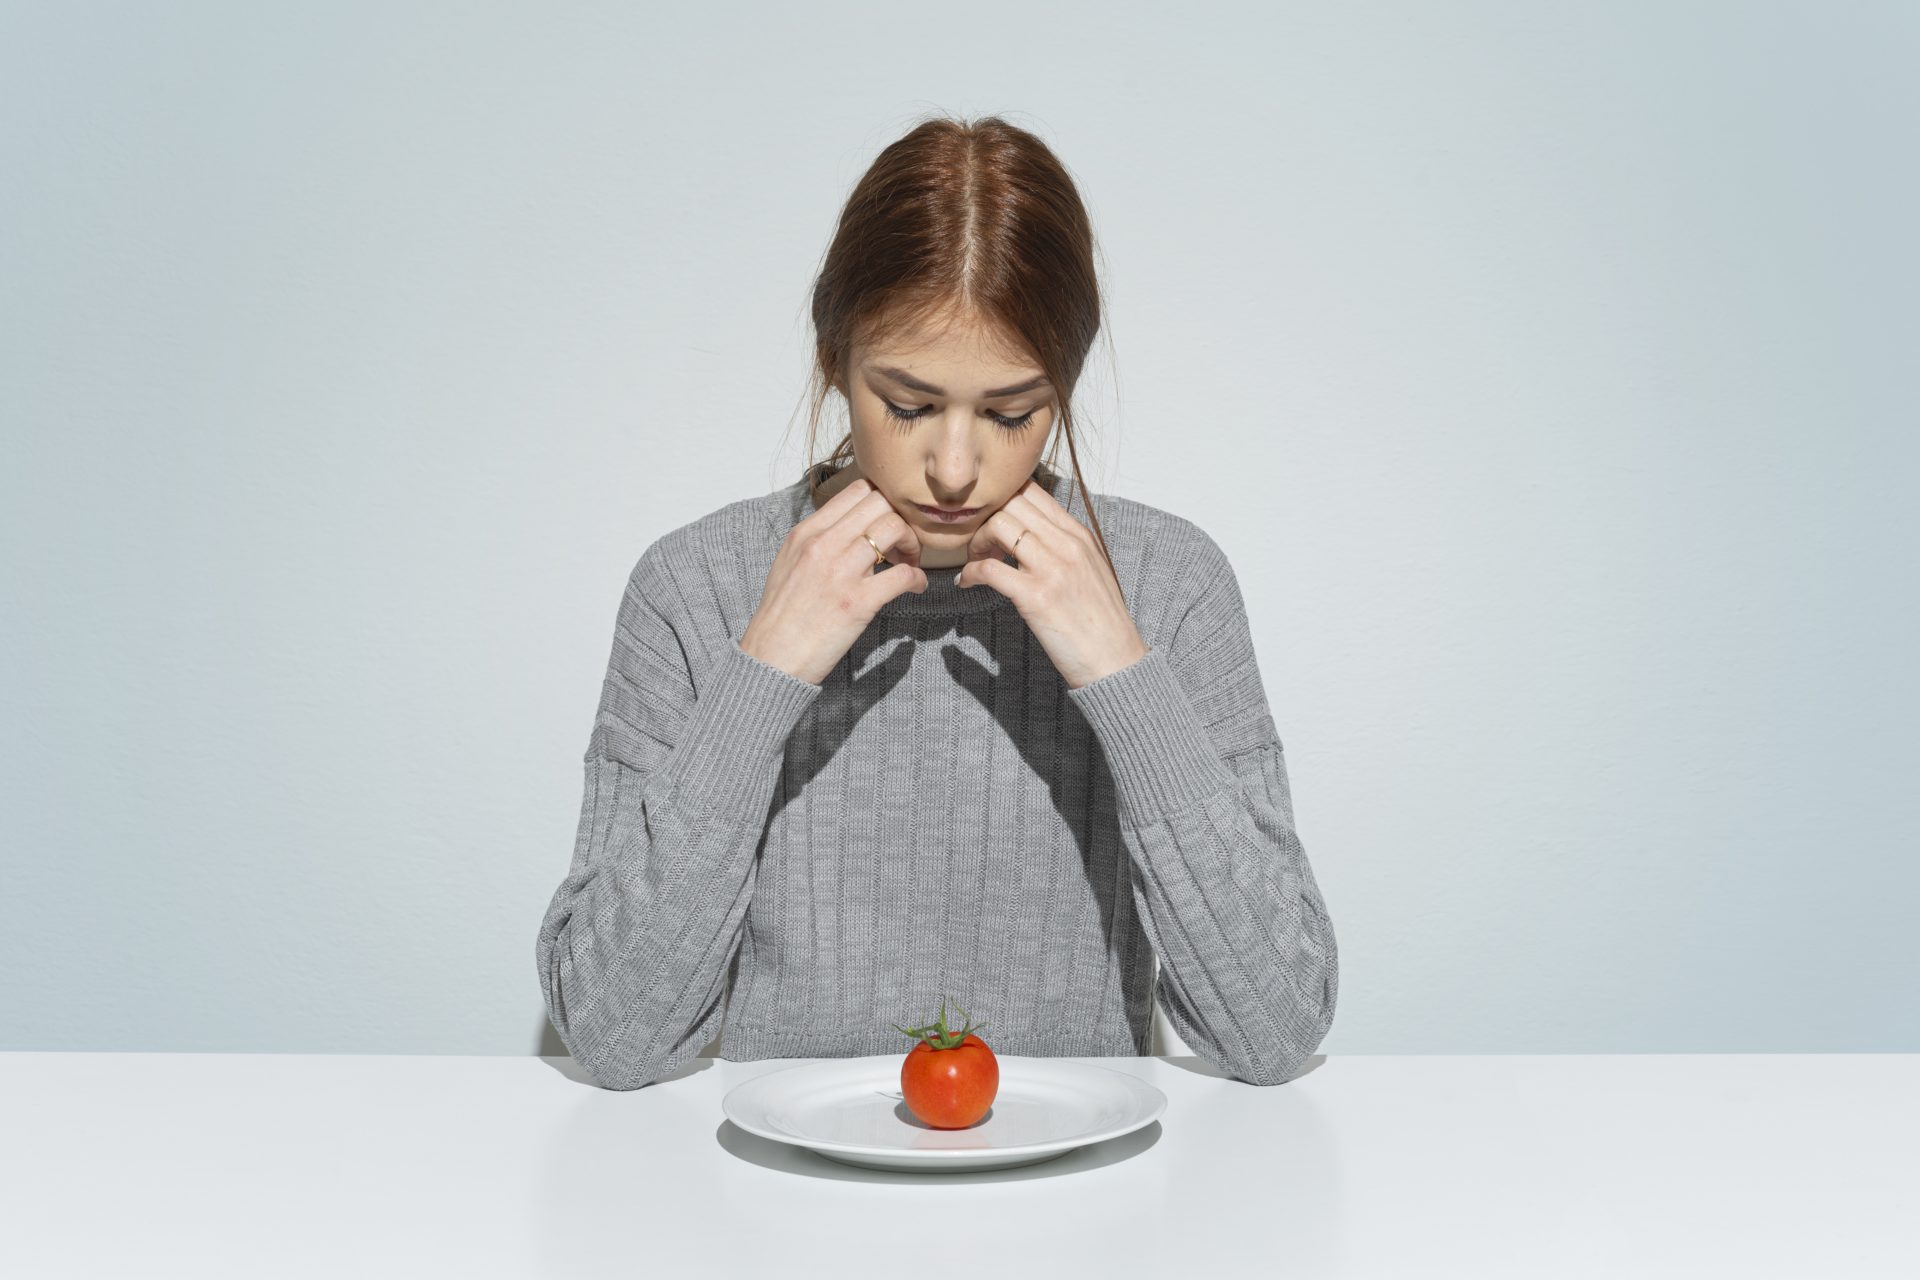 La relation entre le végétalisme et l'anorexie